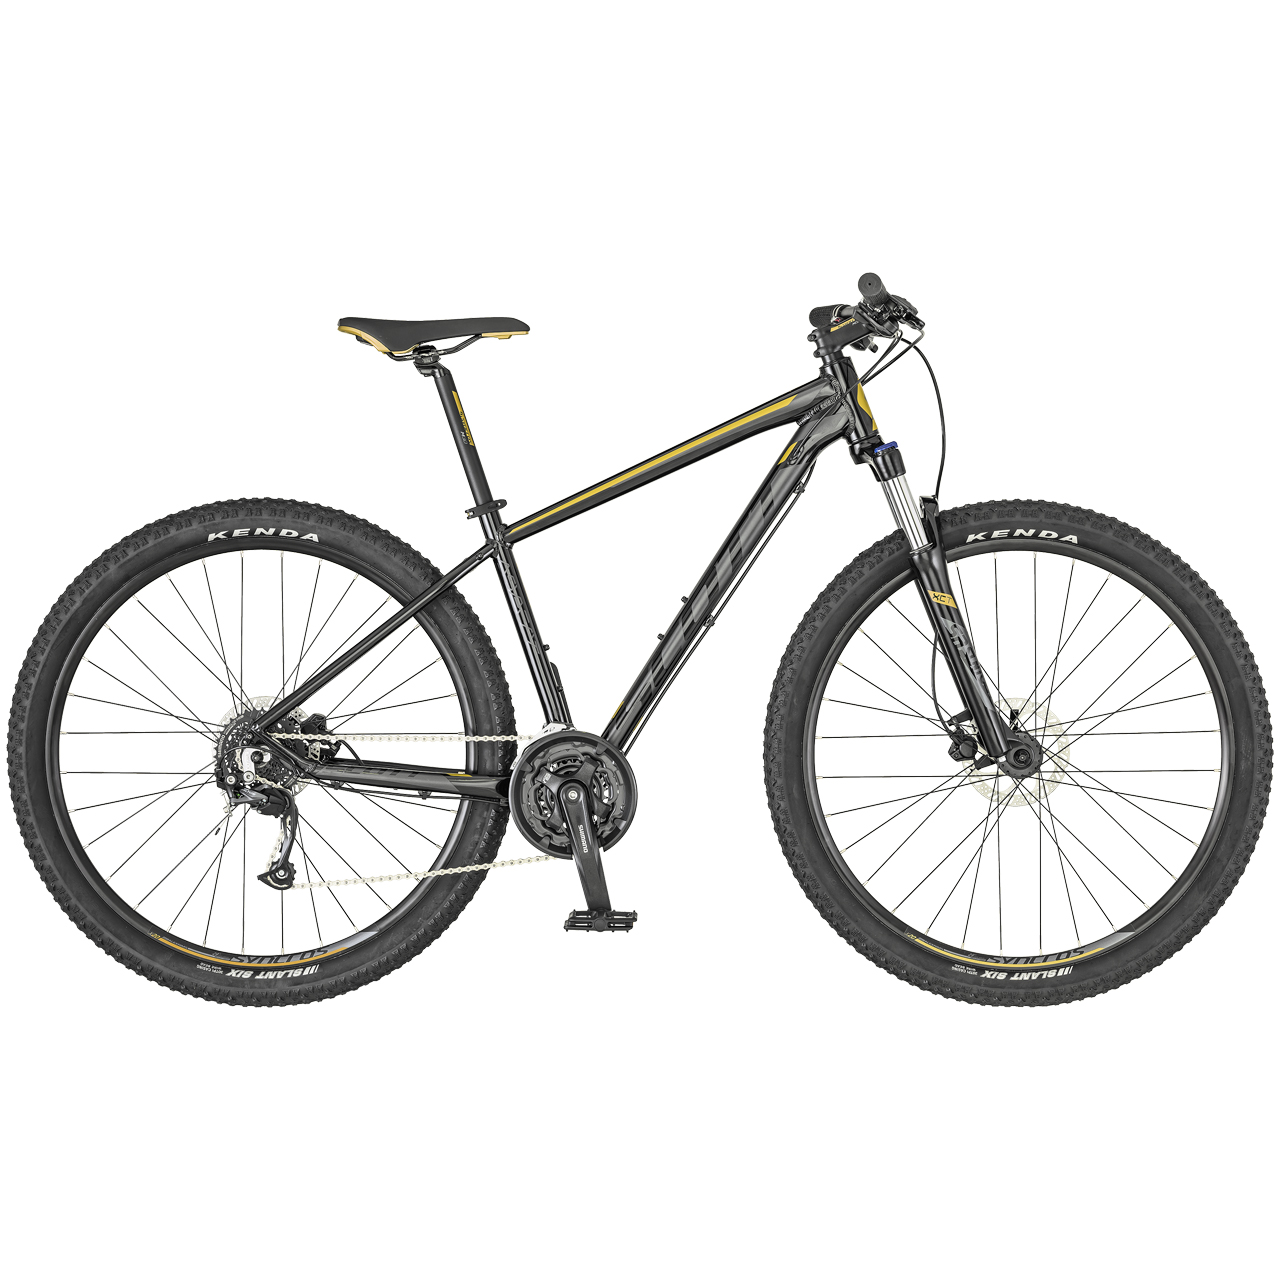 دوچرخه کوهستان اسکات مدل ASPECT 750-2019 سایز 27.5